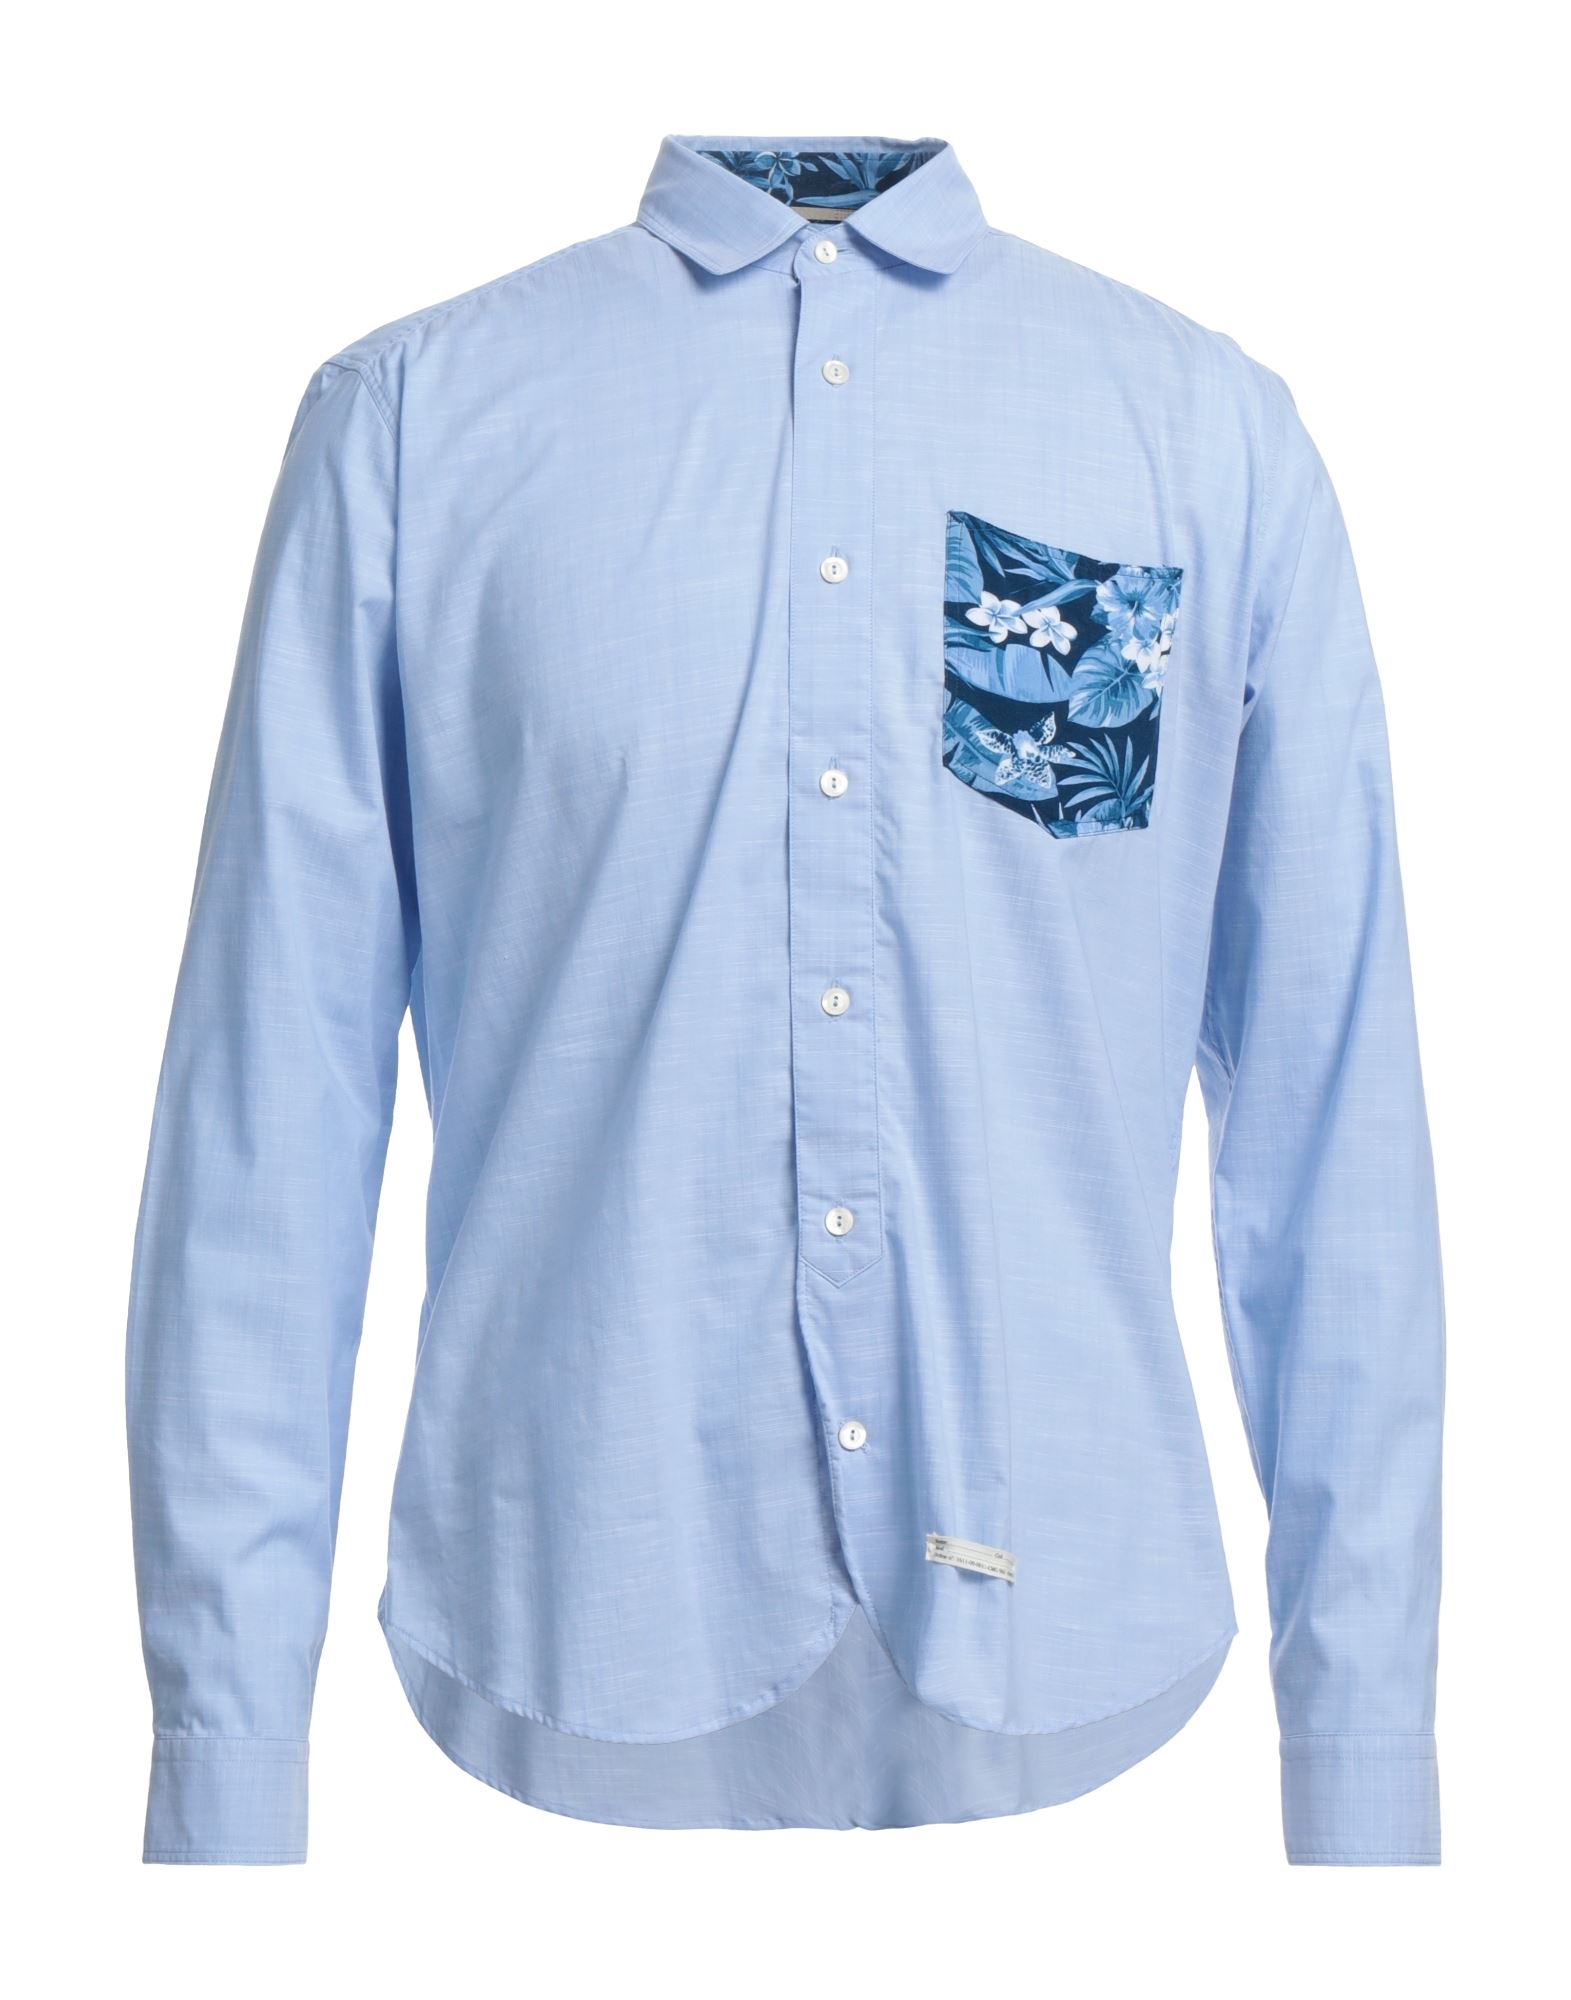 Tintoria Mattei 954 Shirts In Blue